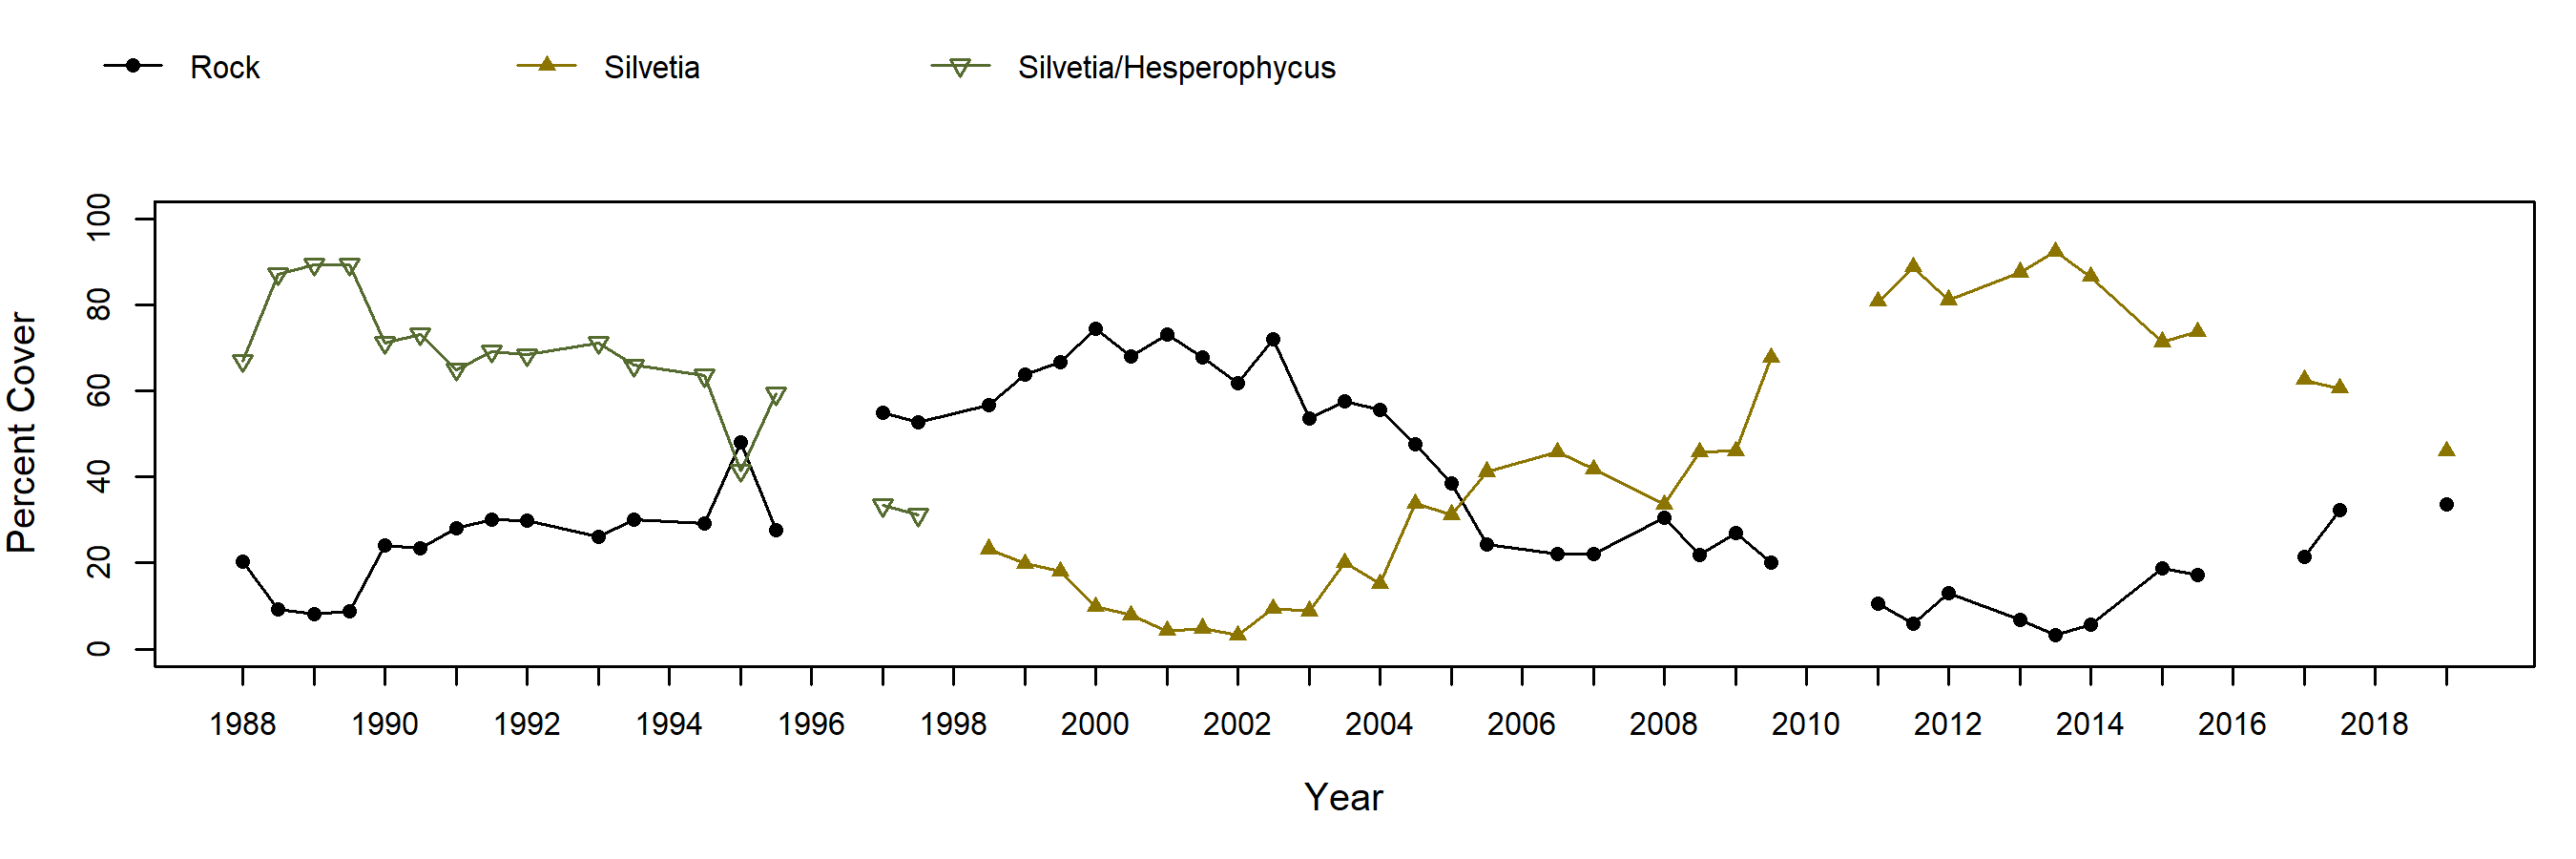 Fossil Reef Silvetia trend plot